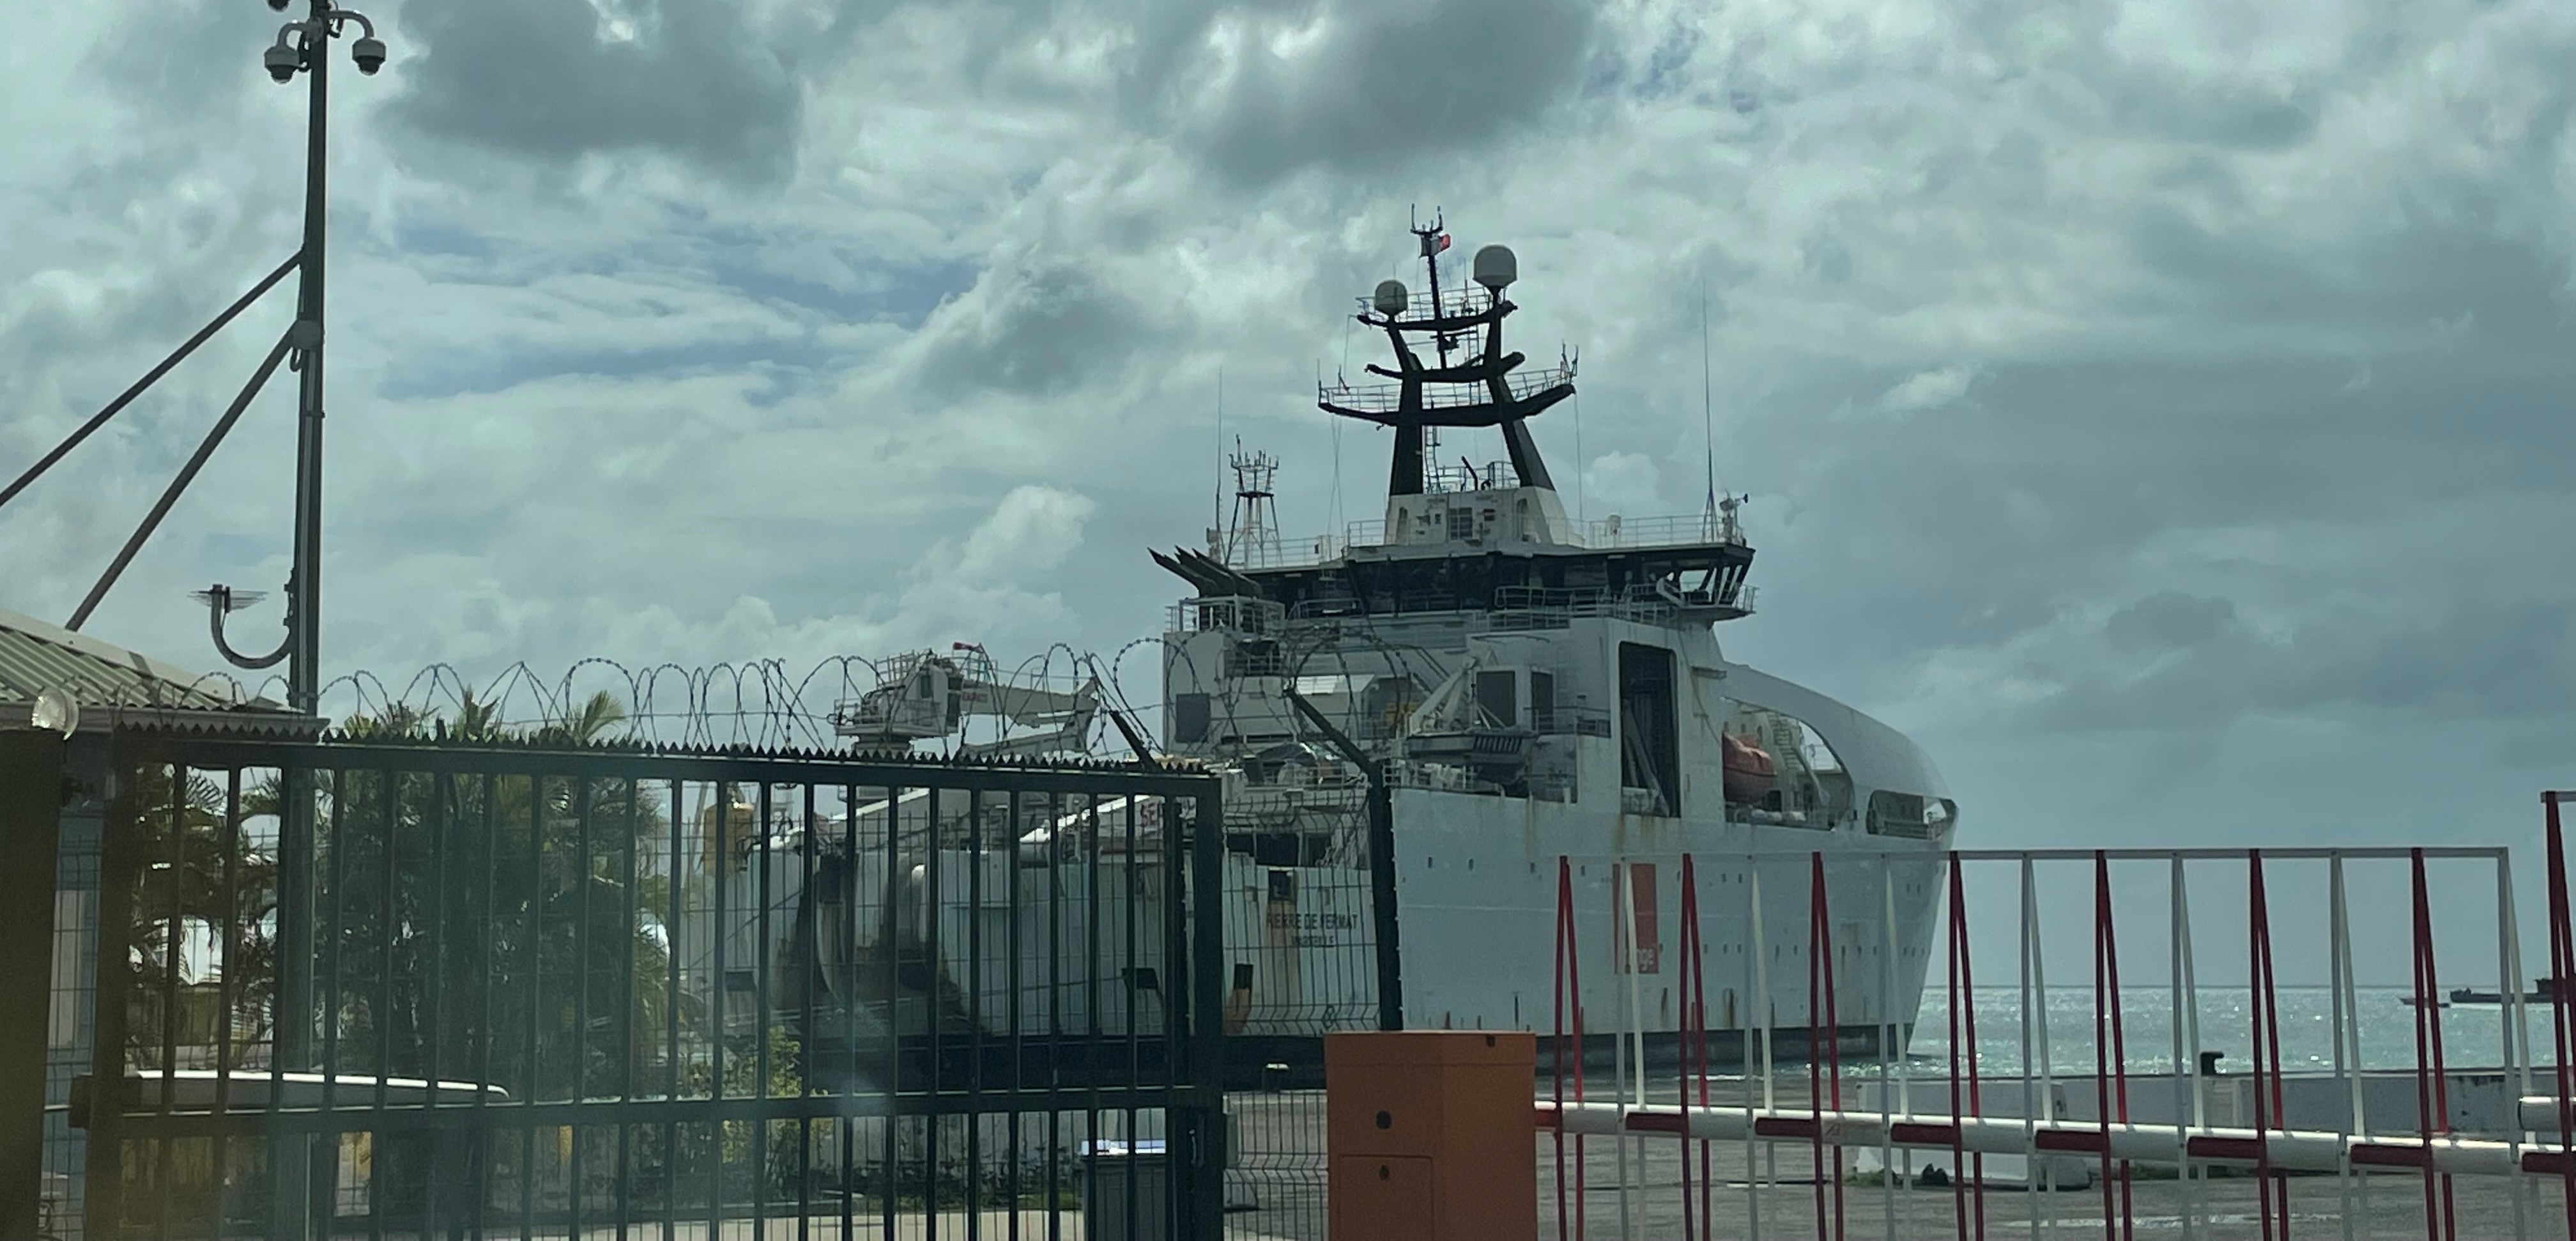     Orange Marine s'engage à dédommager les marins-pêcheurs victimes de dégâts matériels

